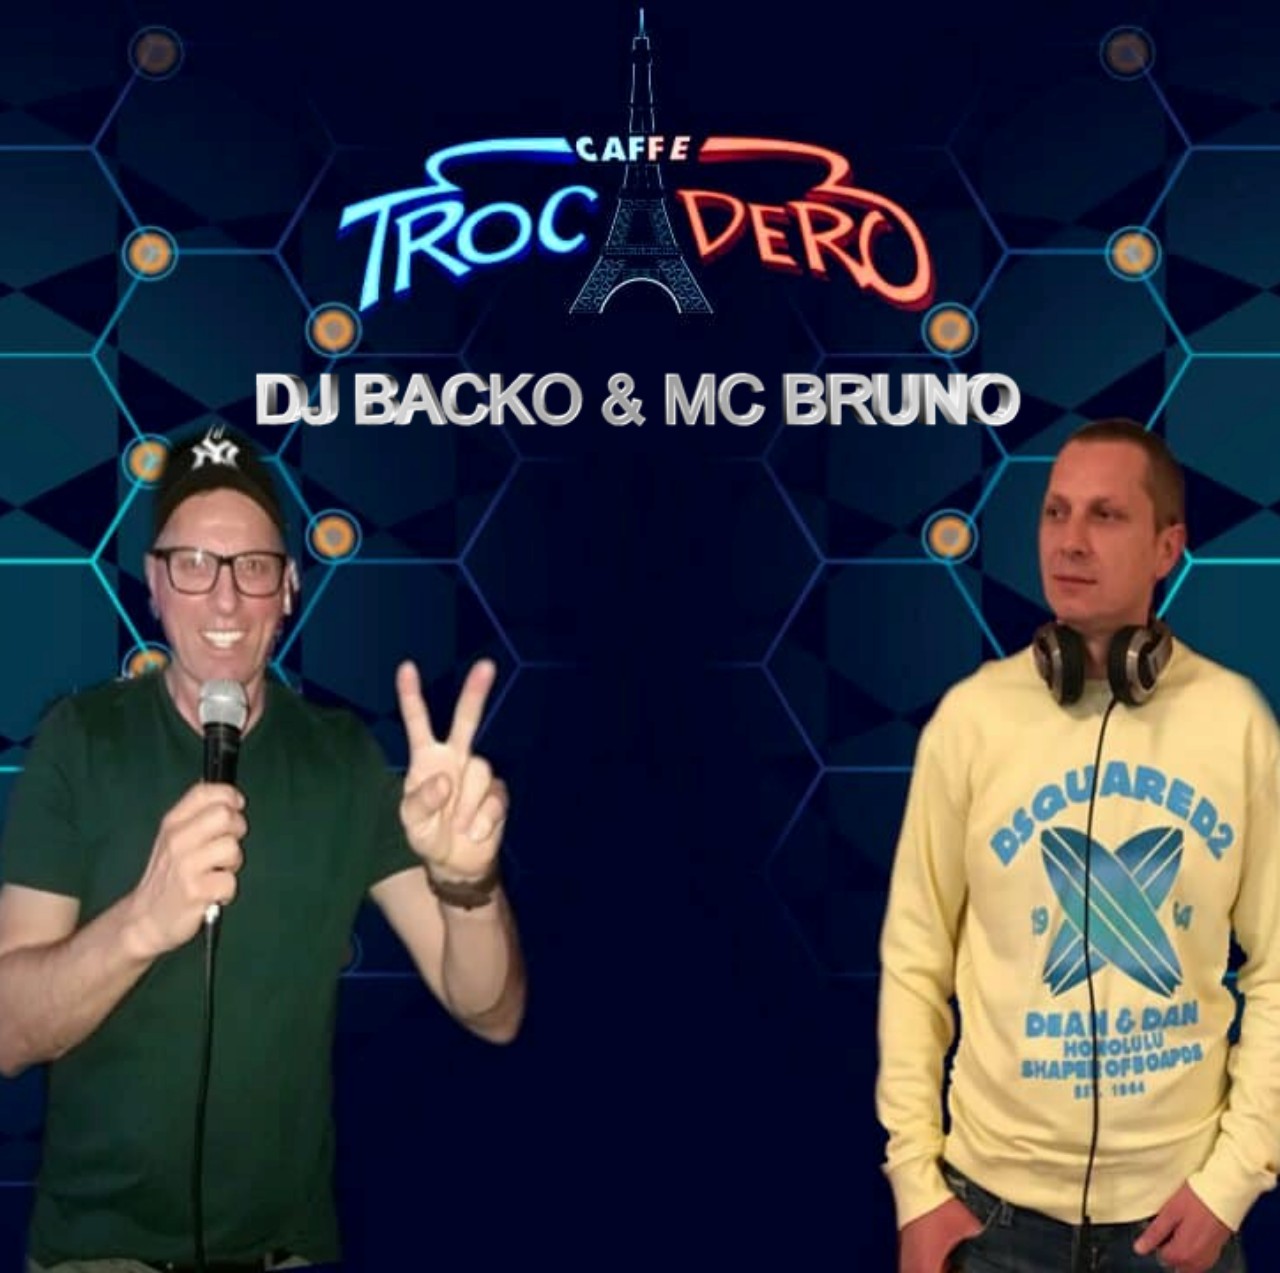 DJ Backo & MC Bruno